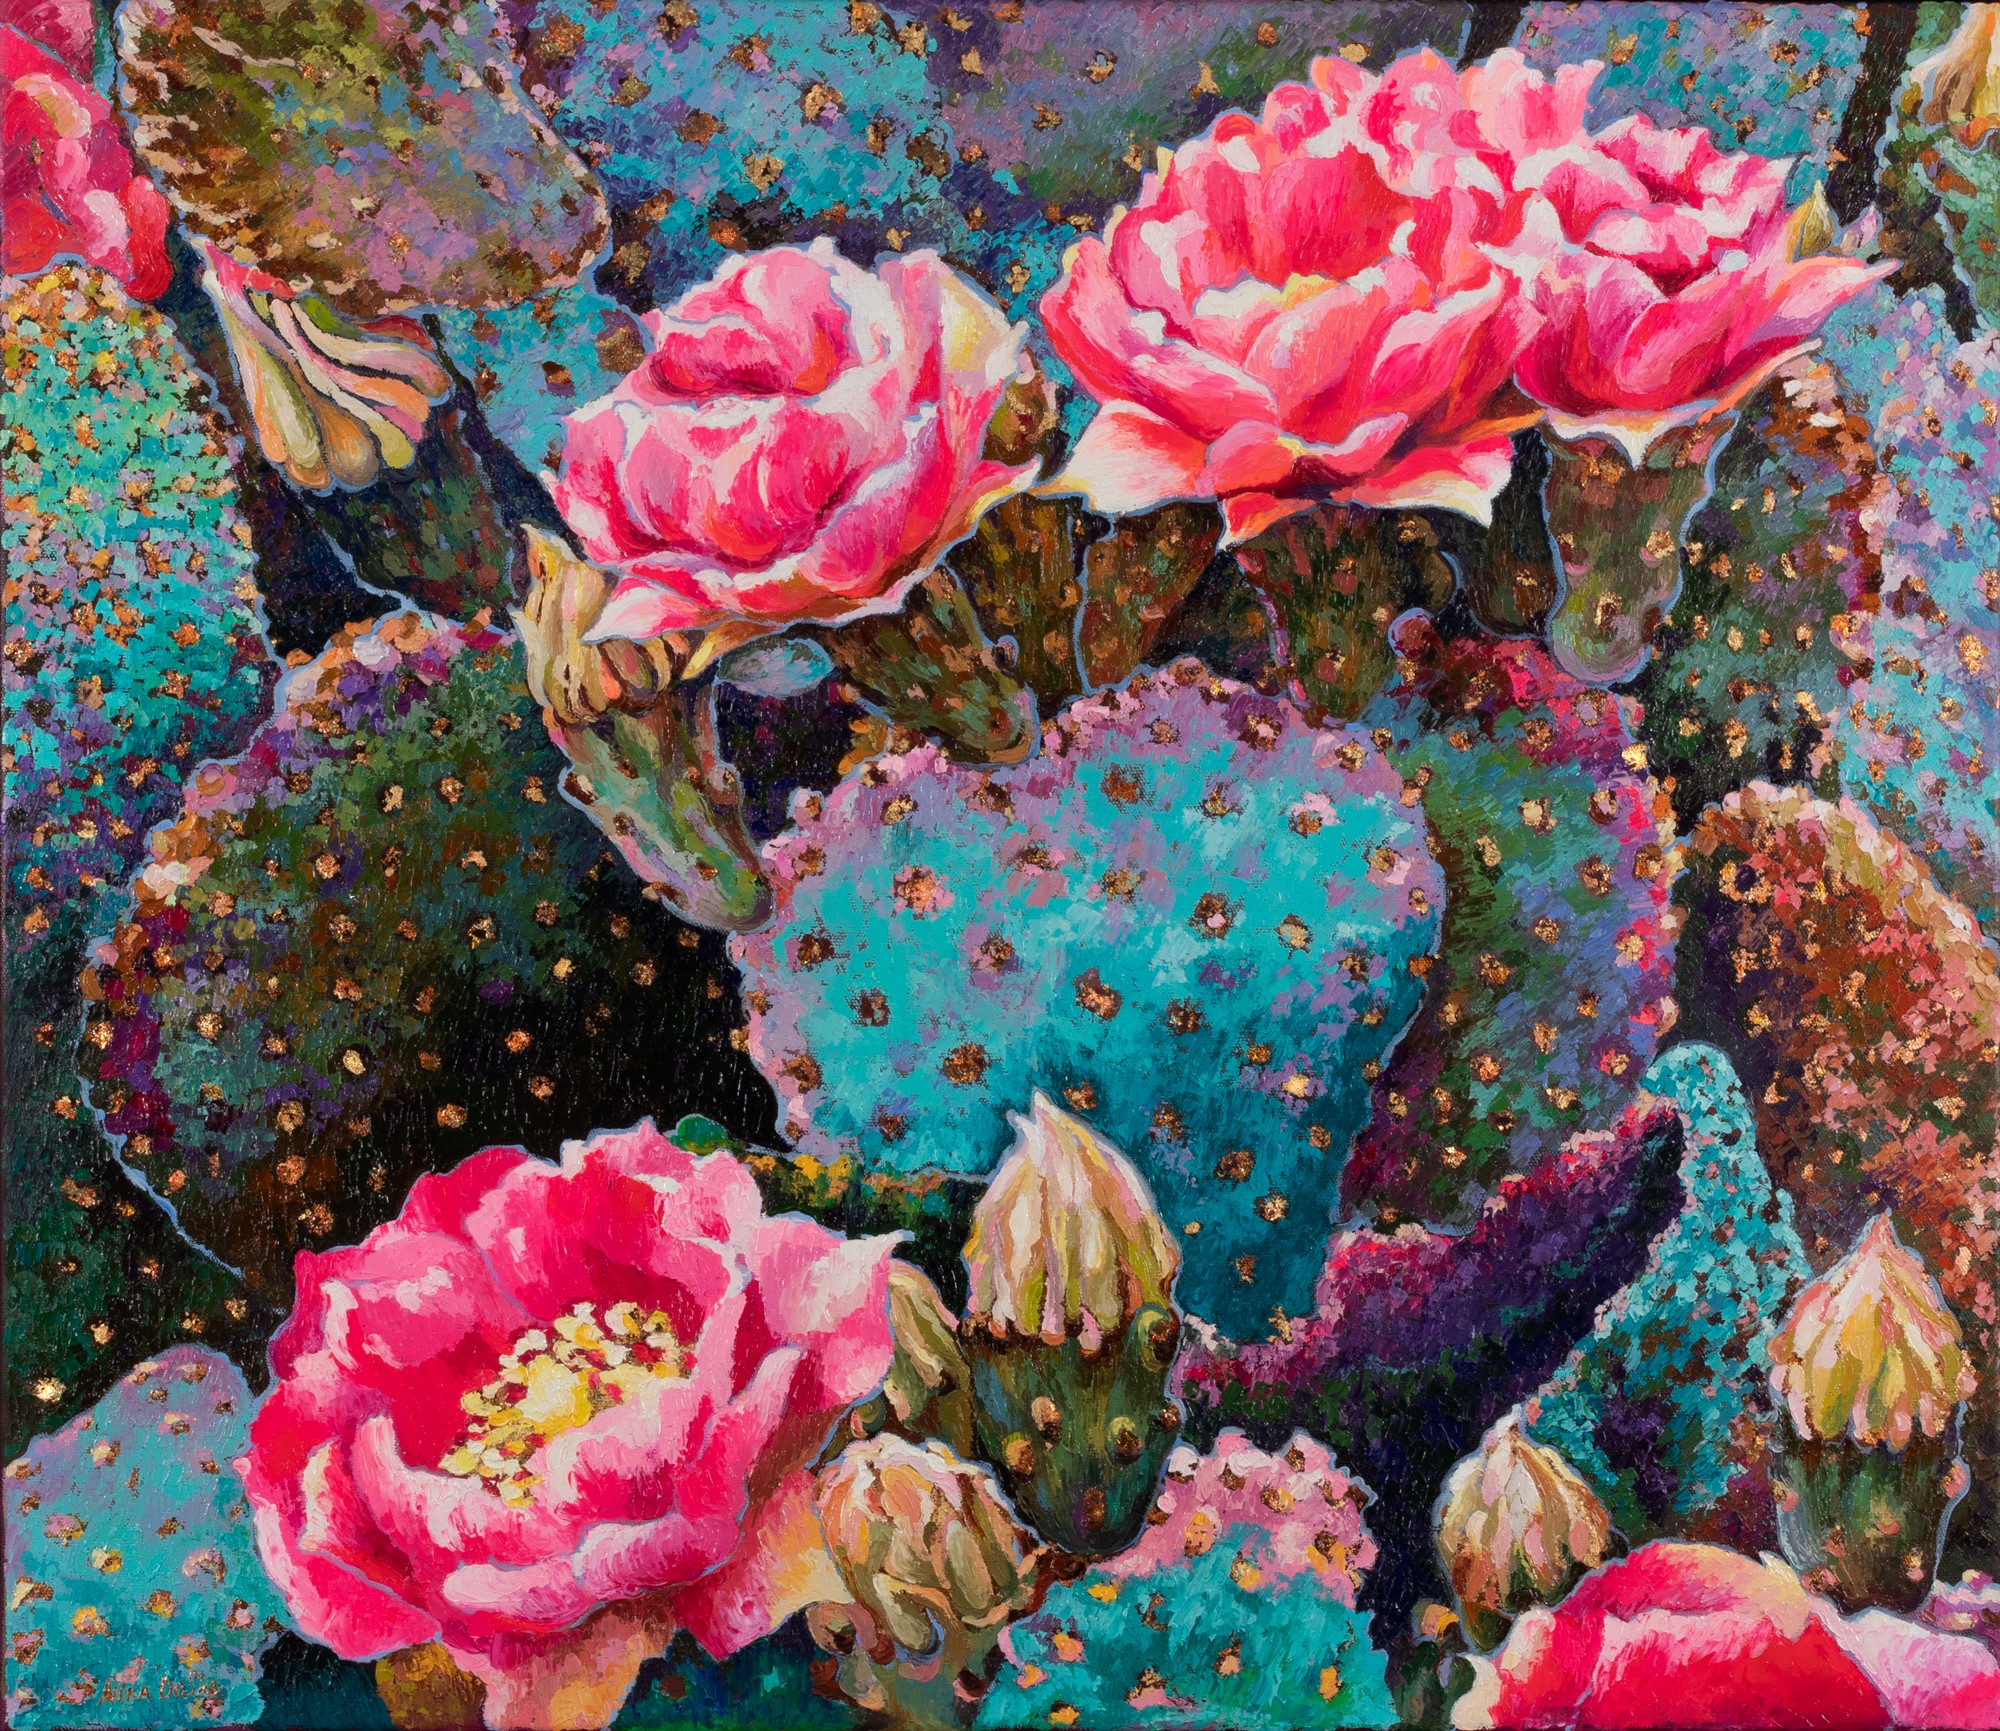 Nina DoShe "Cactuses in Bloom"